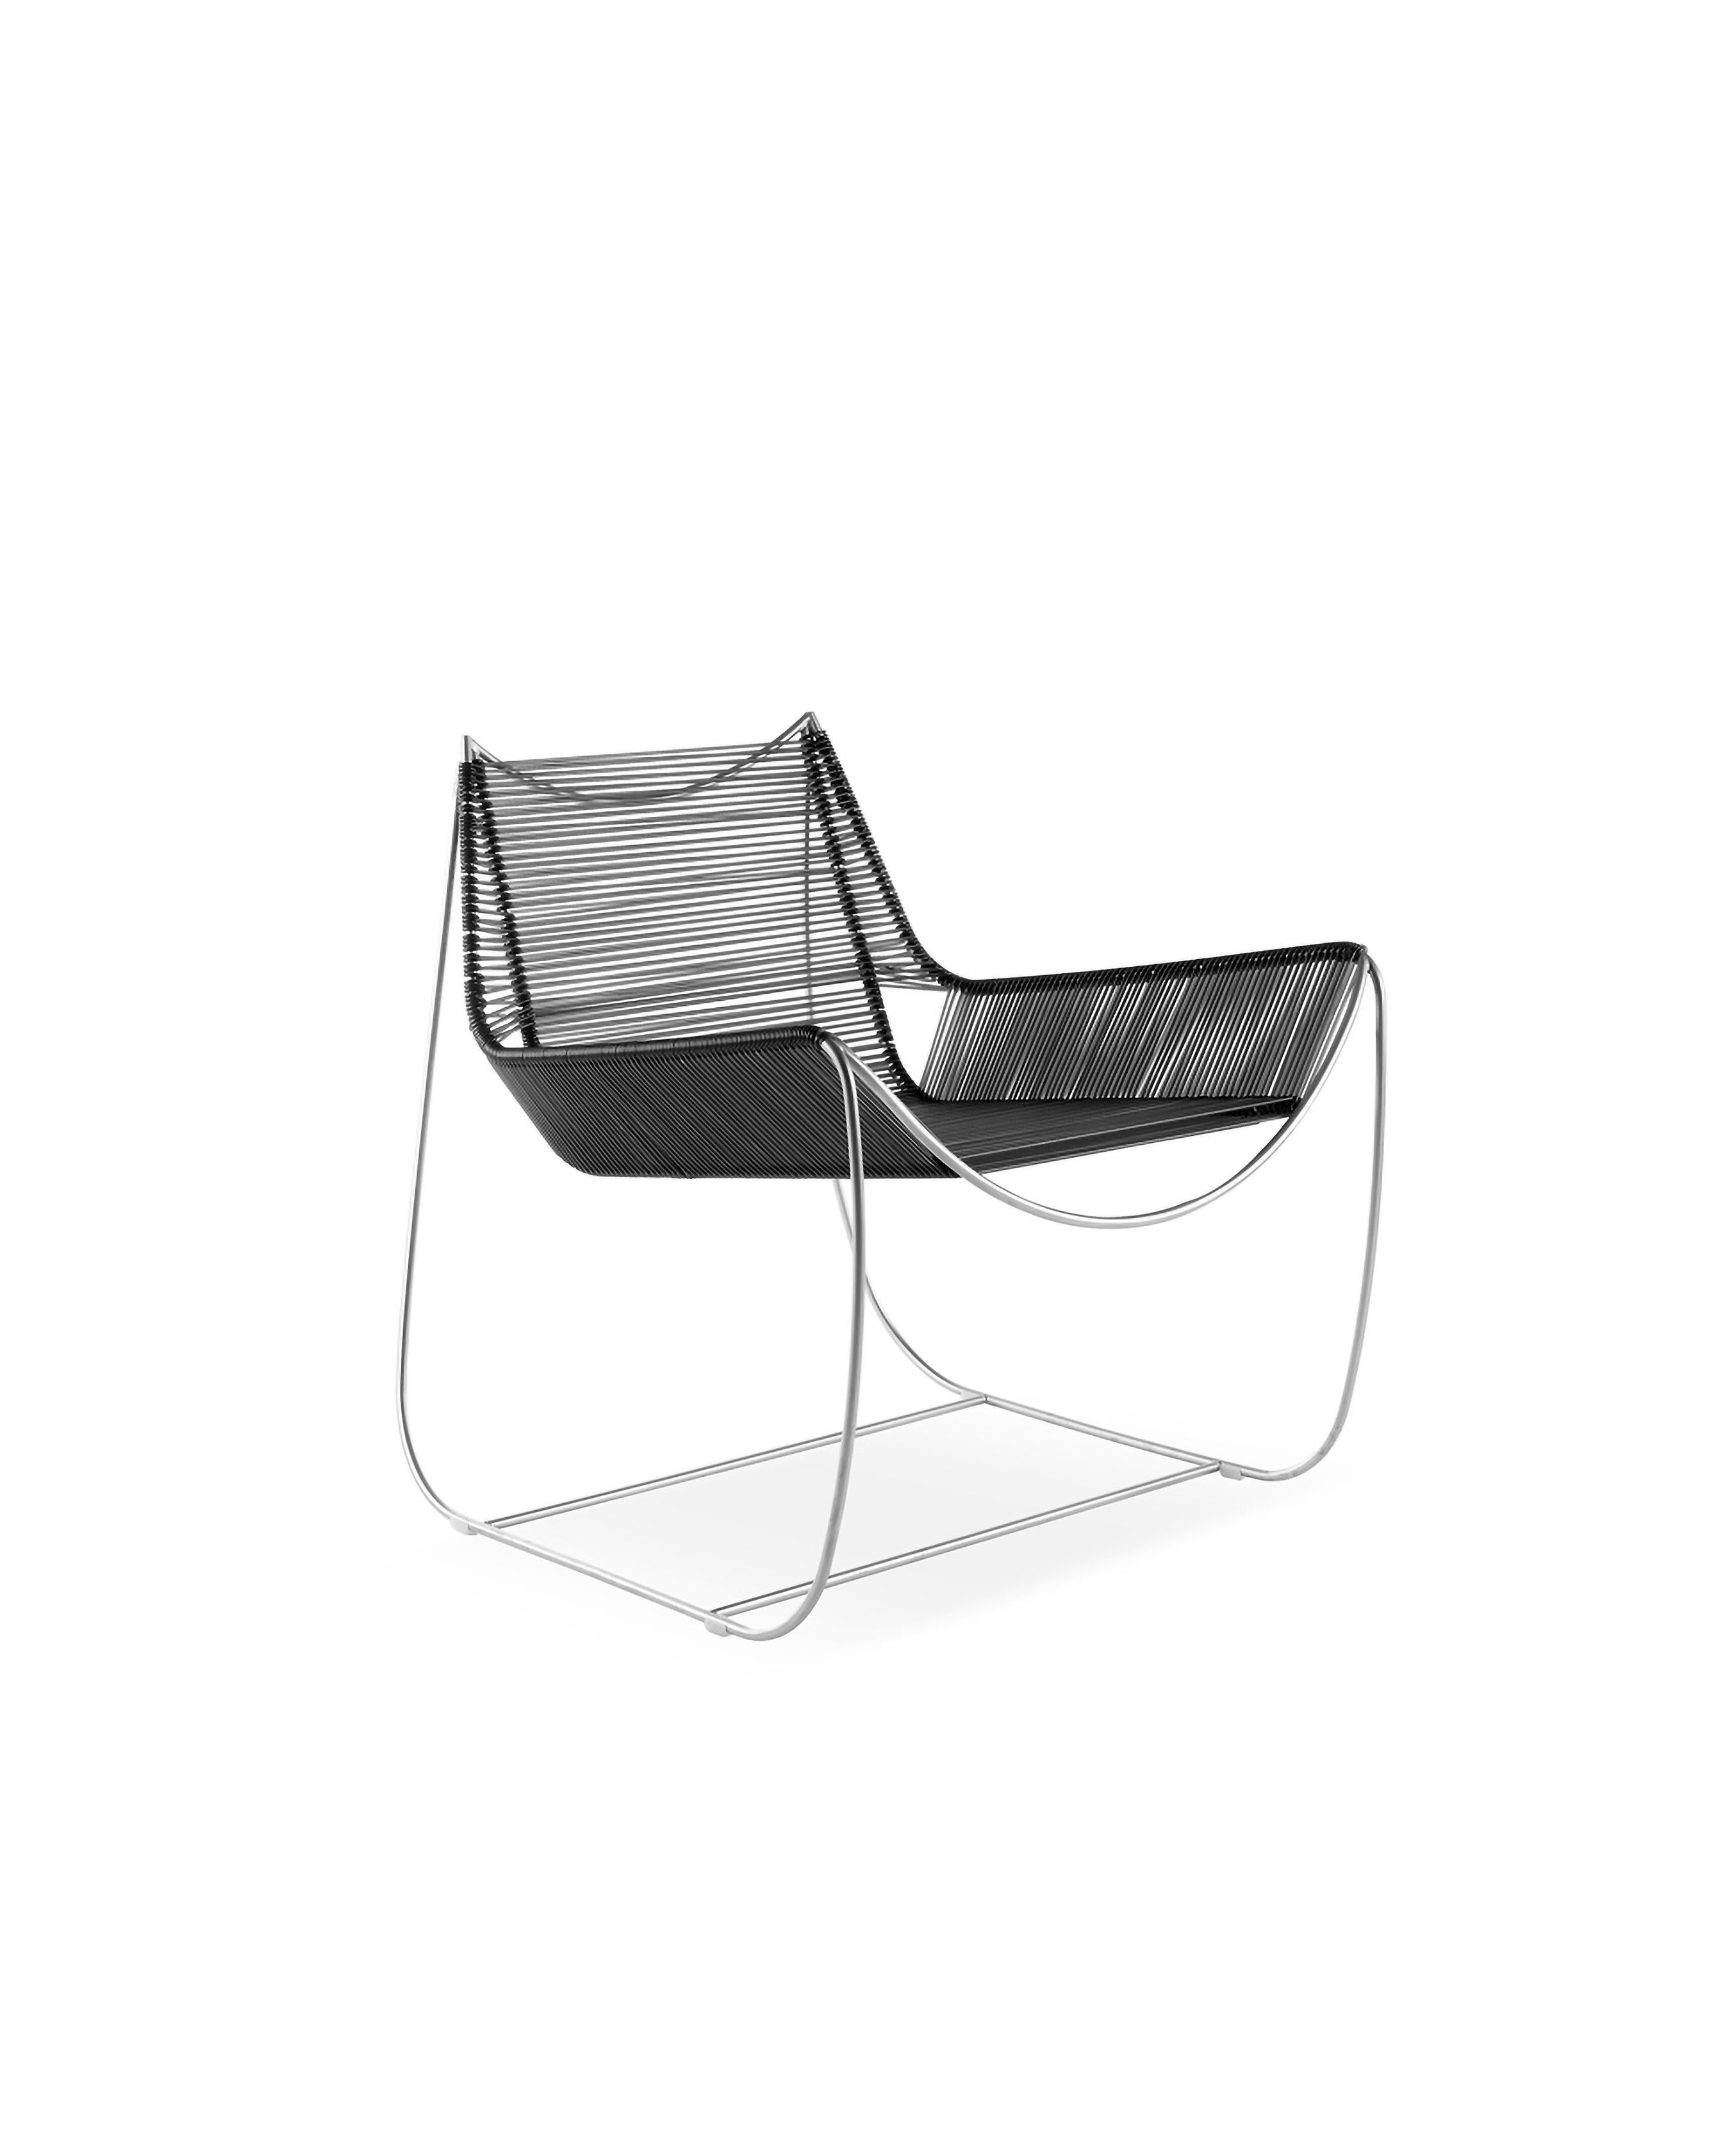 Sunday Morning, Sitzmöbel aus Edelstahl, die sich durch ein konturiertes Design auszeichnen, um den vorherrschenden leeren Raum in ihren Formen zu umschließen. Der von Enrico Girotti entworfene und von Edizioni Enrico Girotti hergestellte Stuhl ist